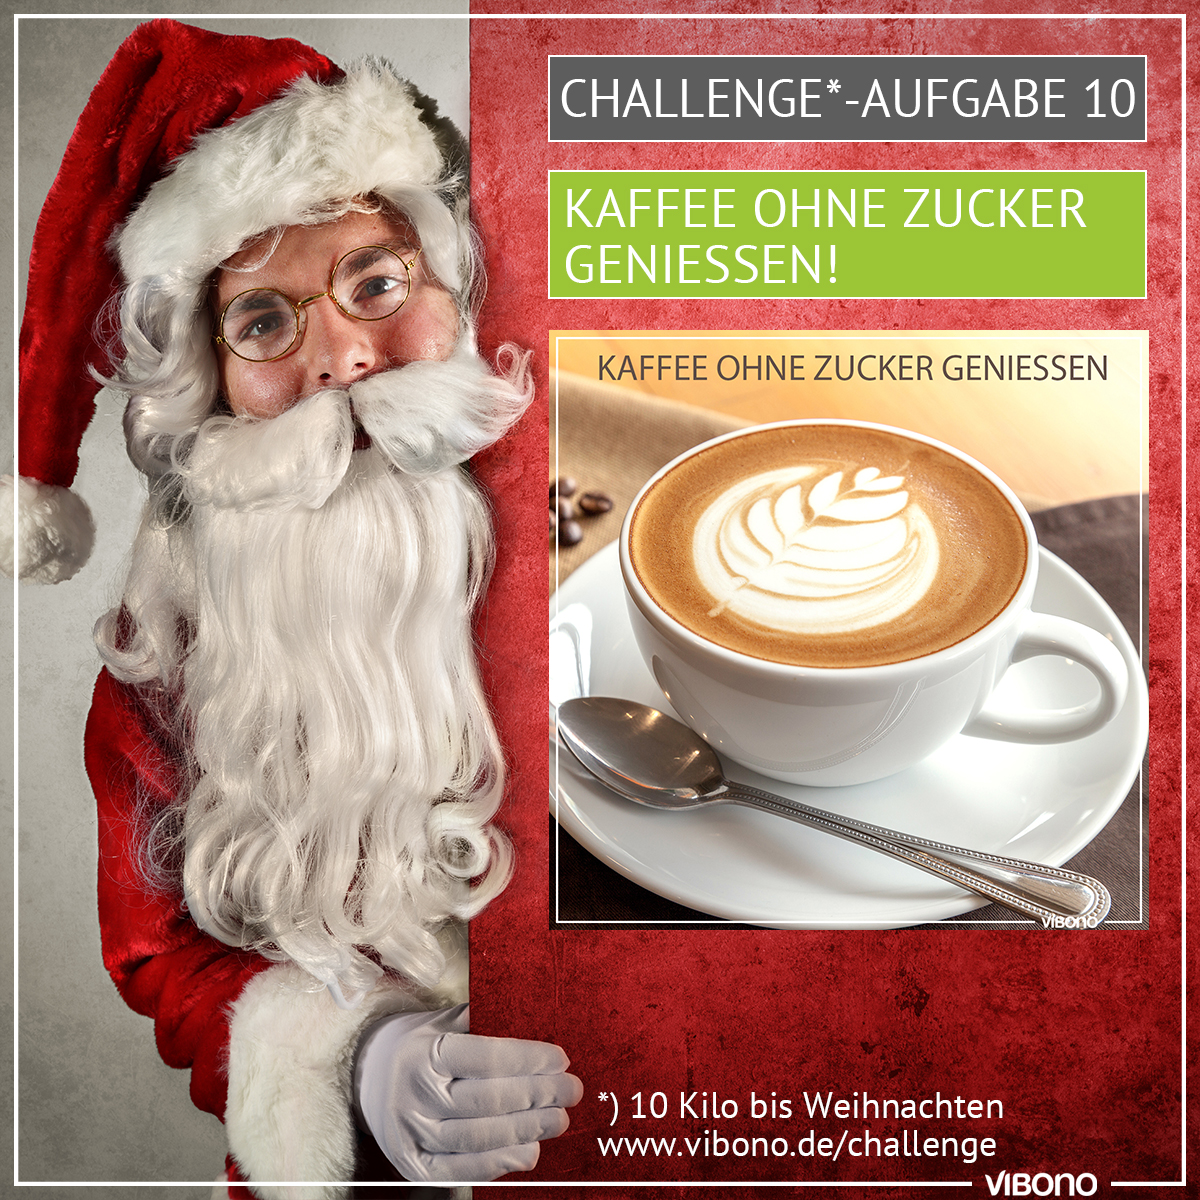 Challenge-Aufgabe 10: Kaffee ohne Zucker